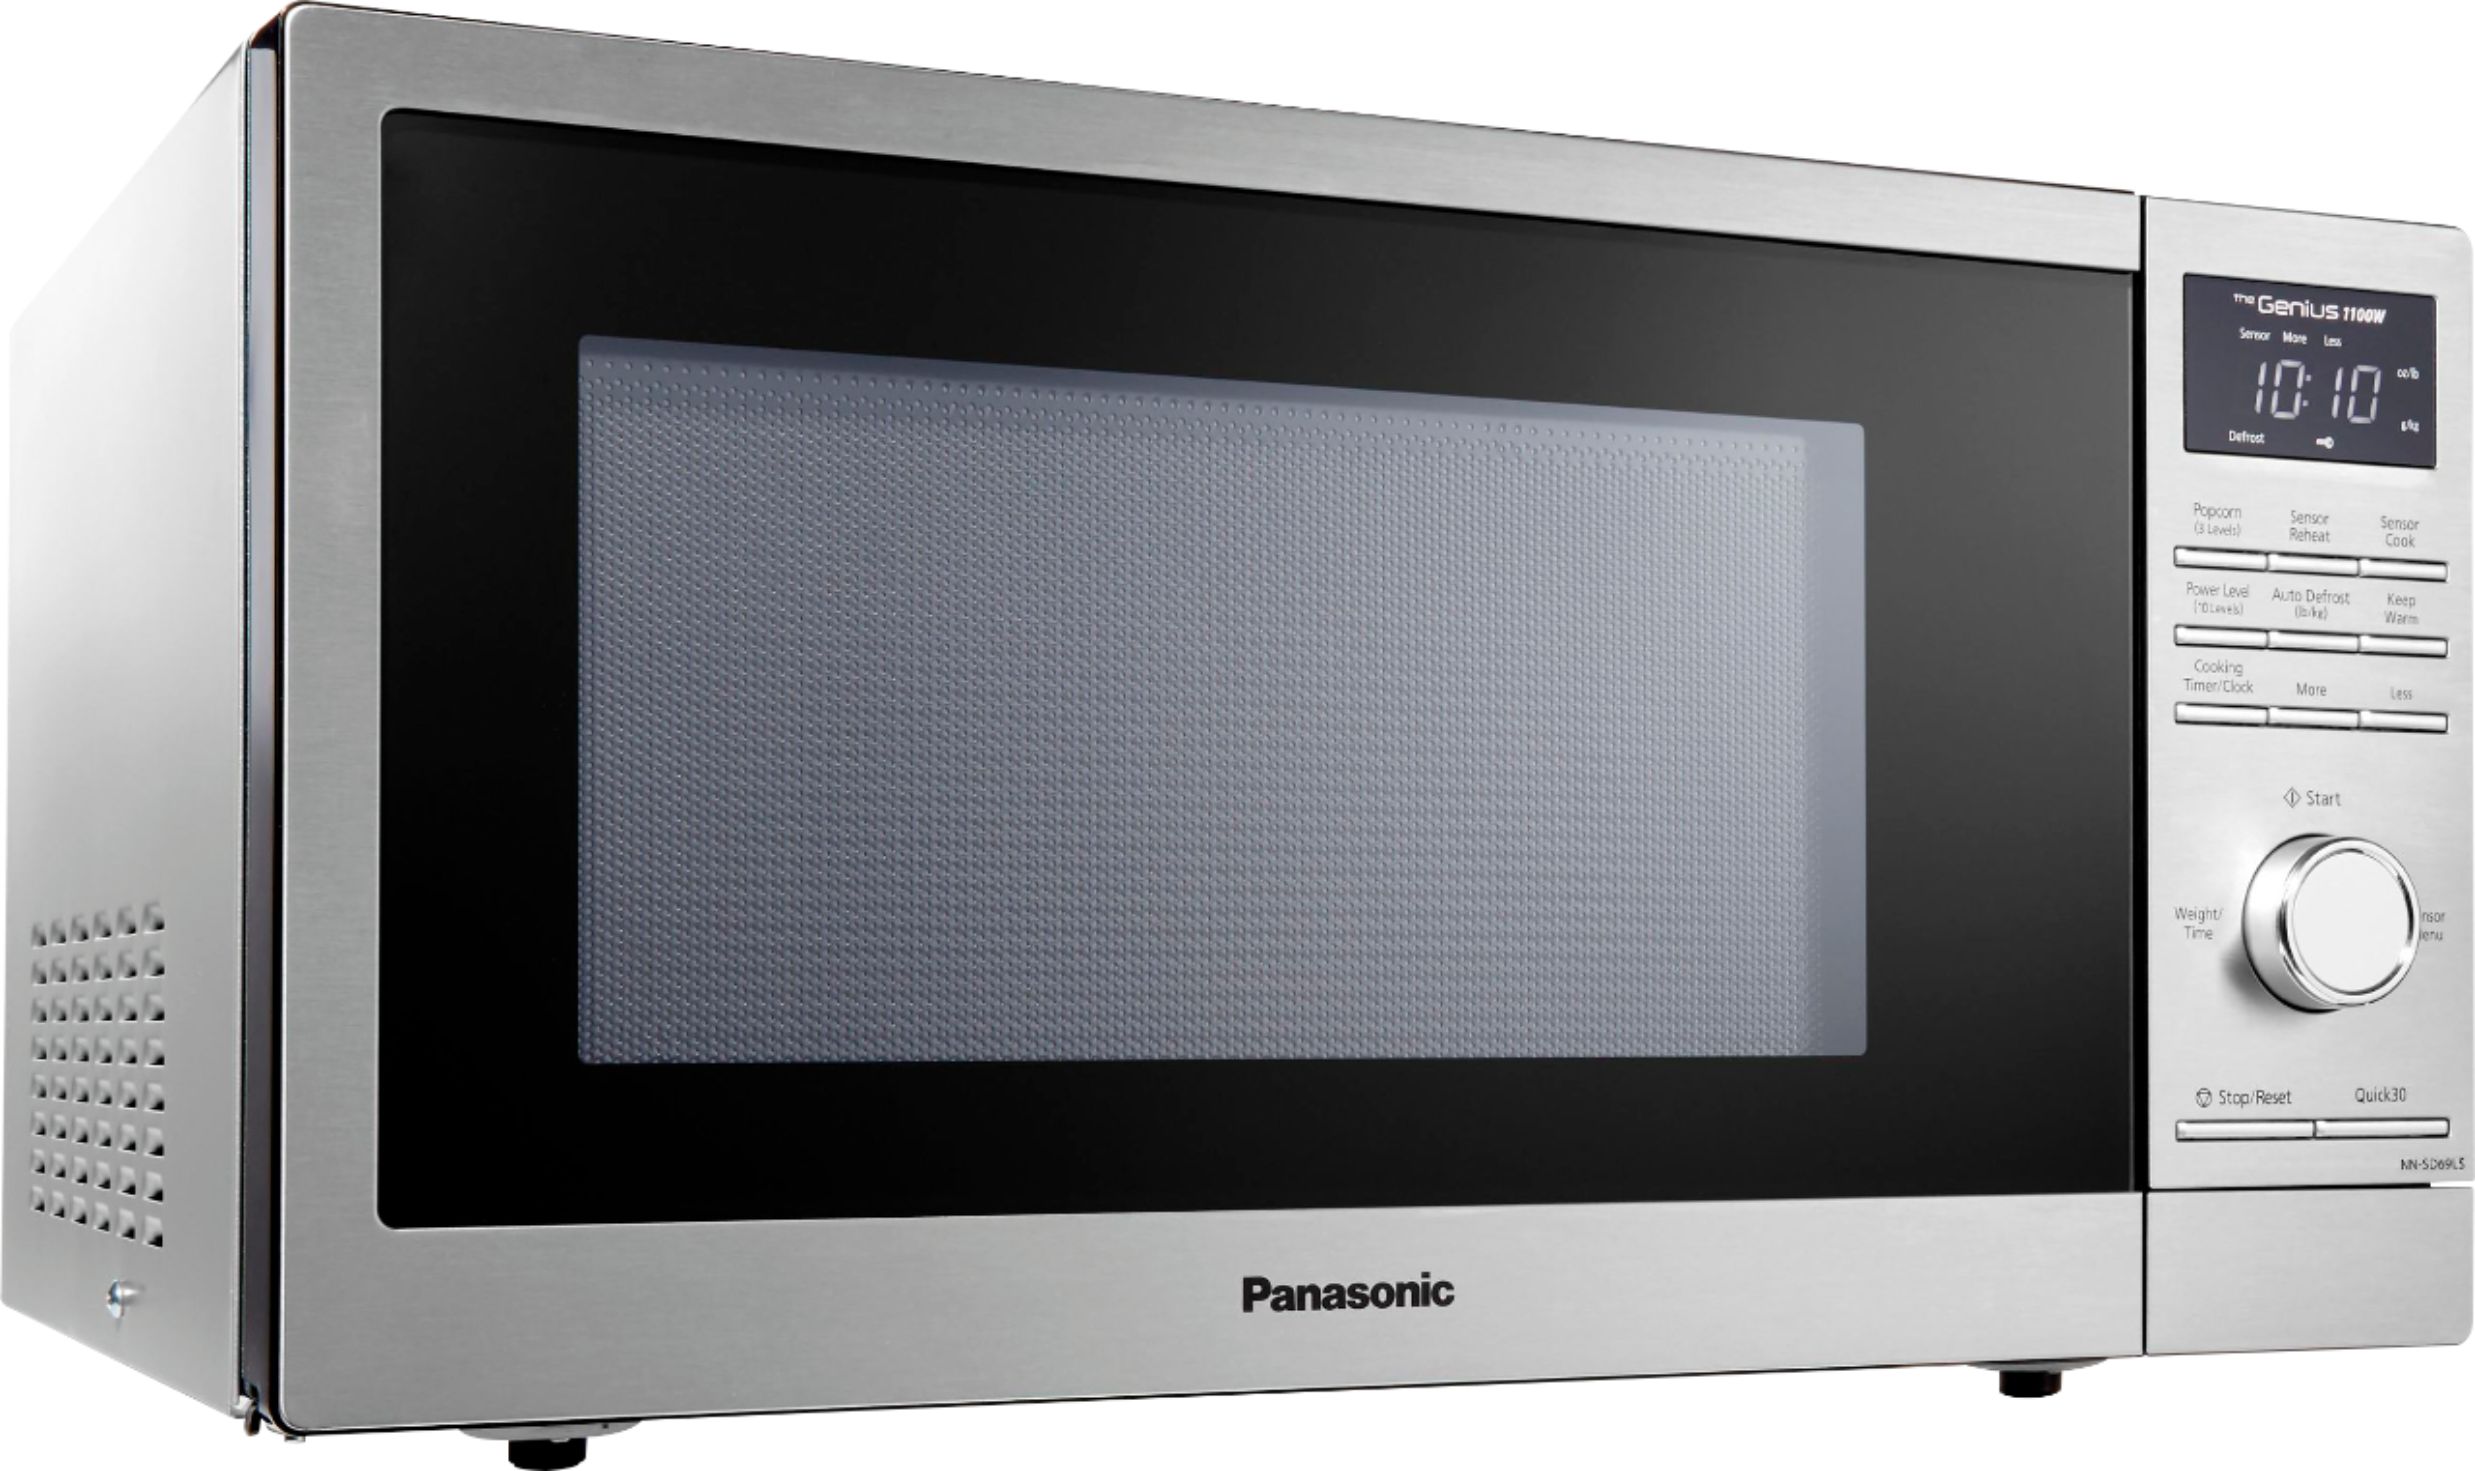 Microondas Panasonic acero inoxidable de 1.3 pies - Agencias Way